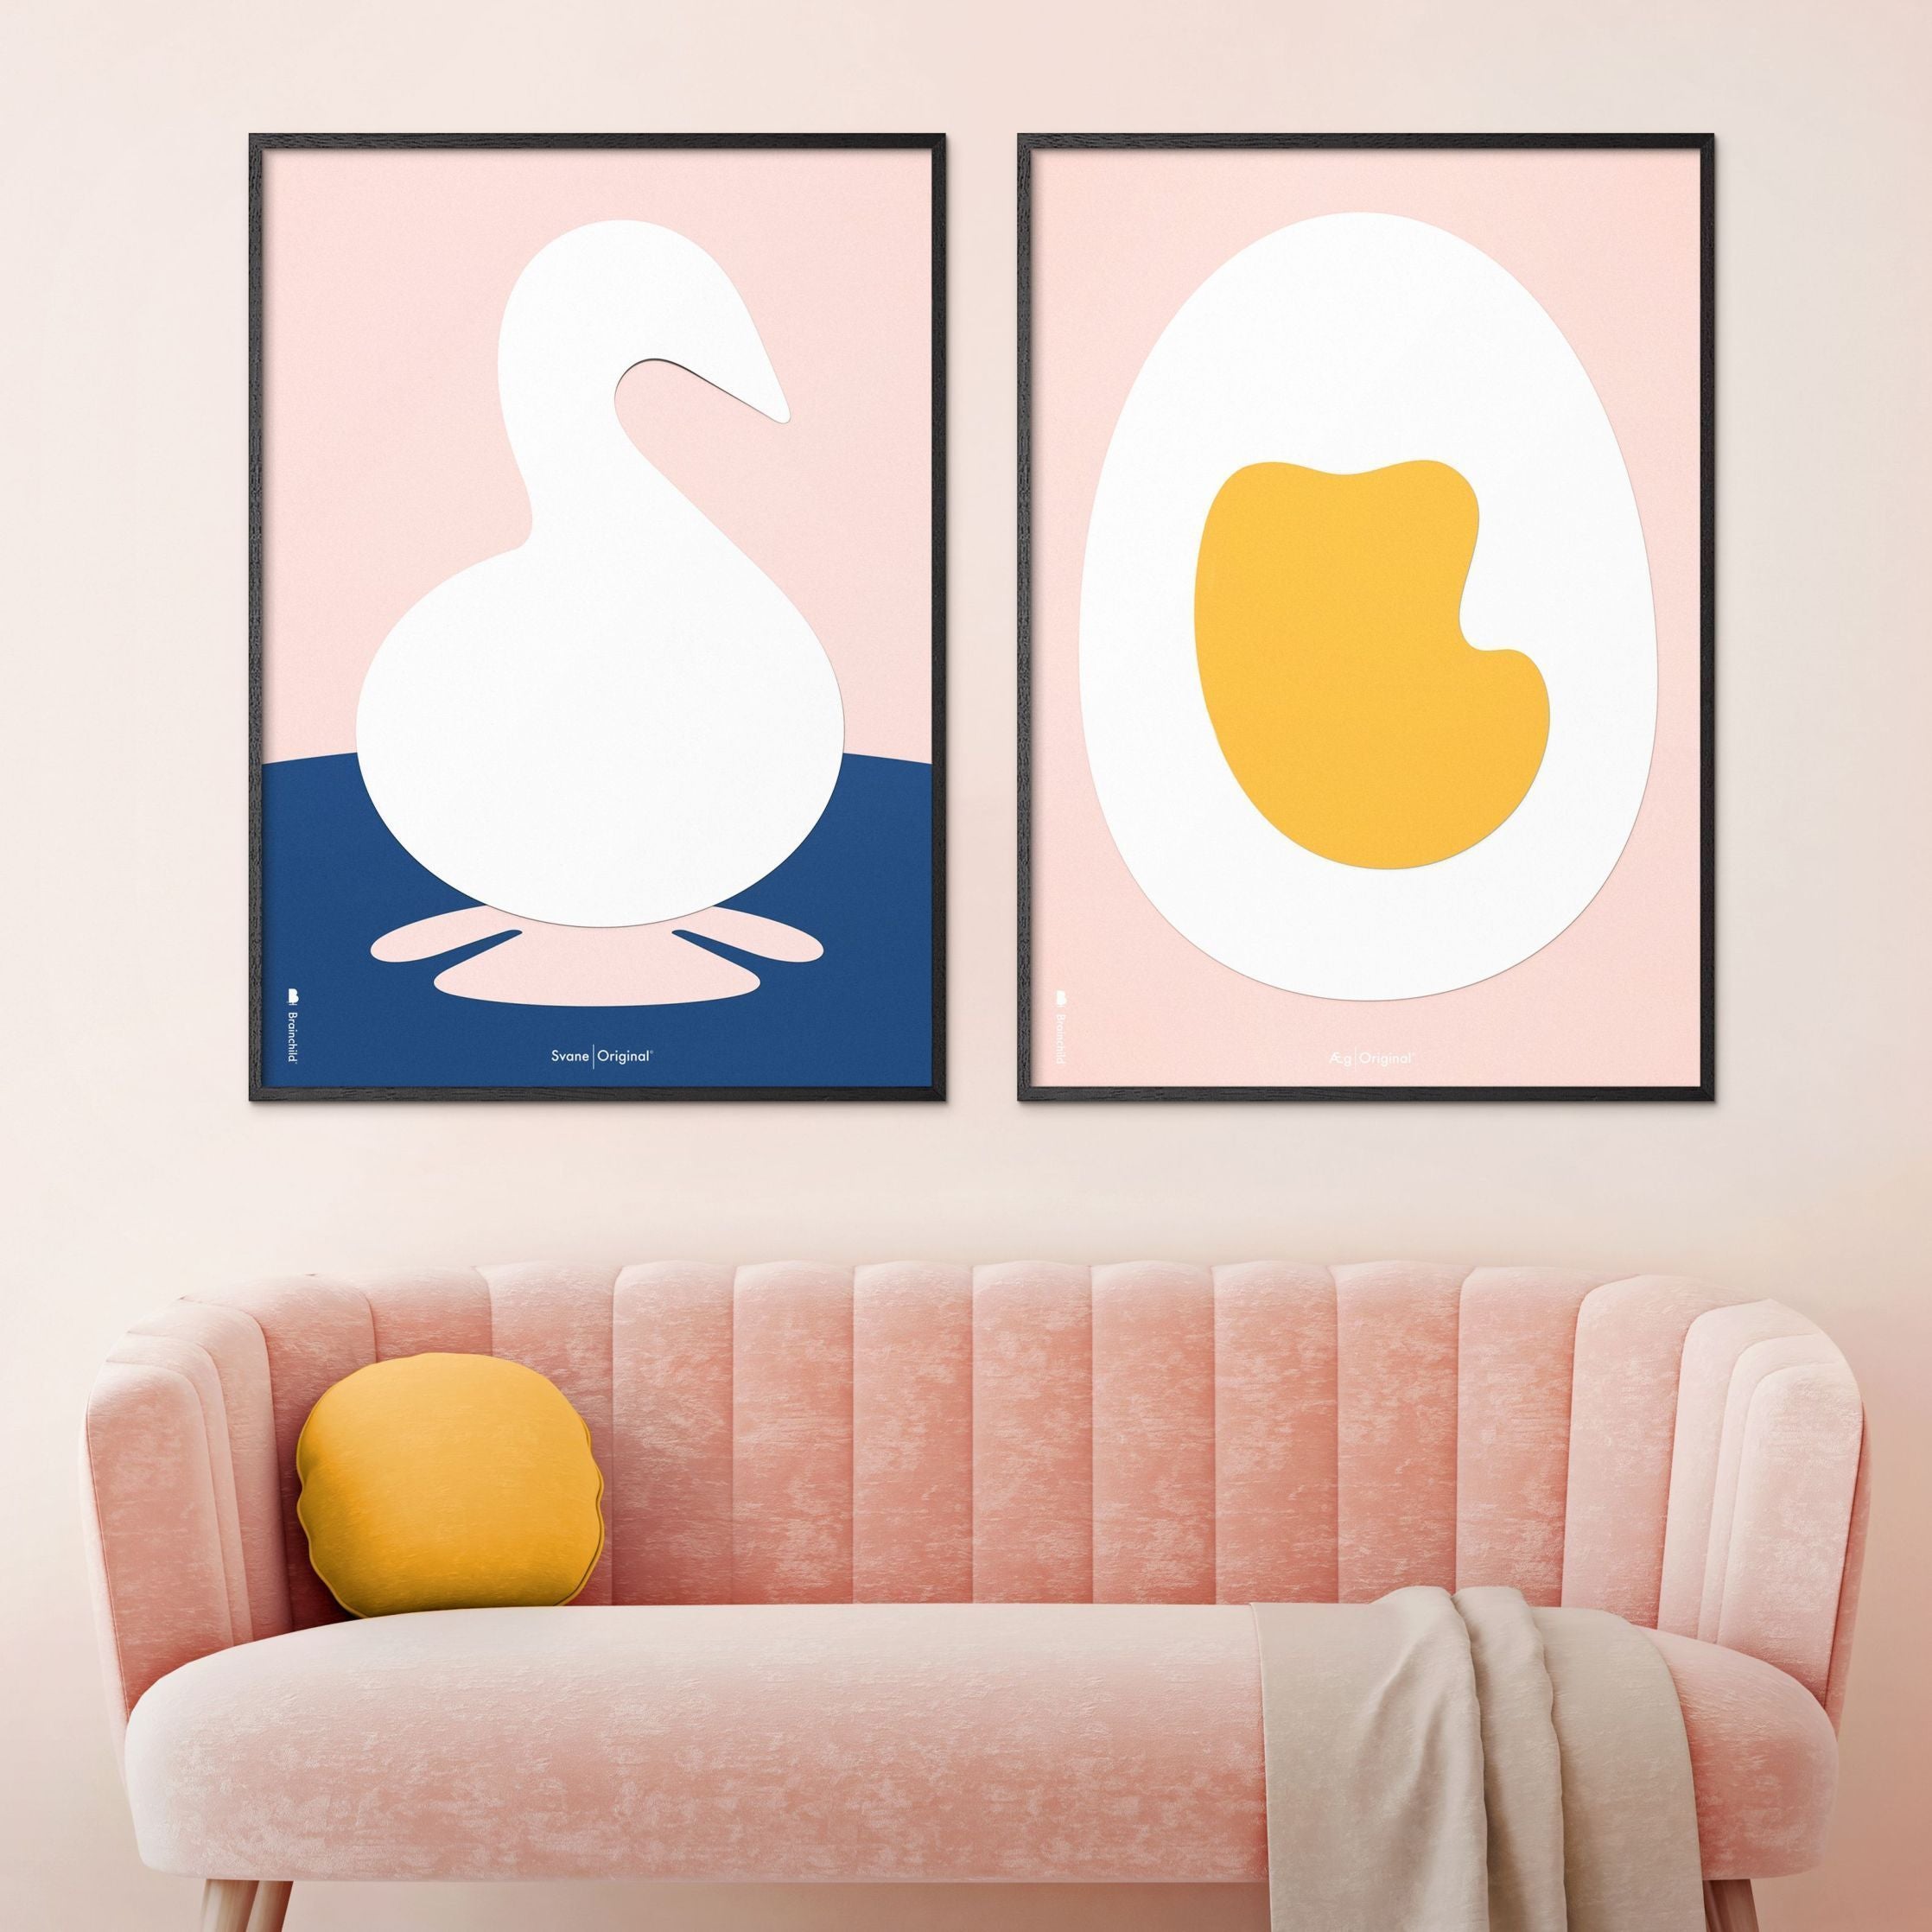 Brainchild Egg Paper Clip plakát mosazný barevný rám A5, růžové pozadí